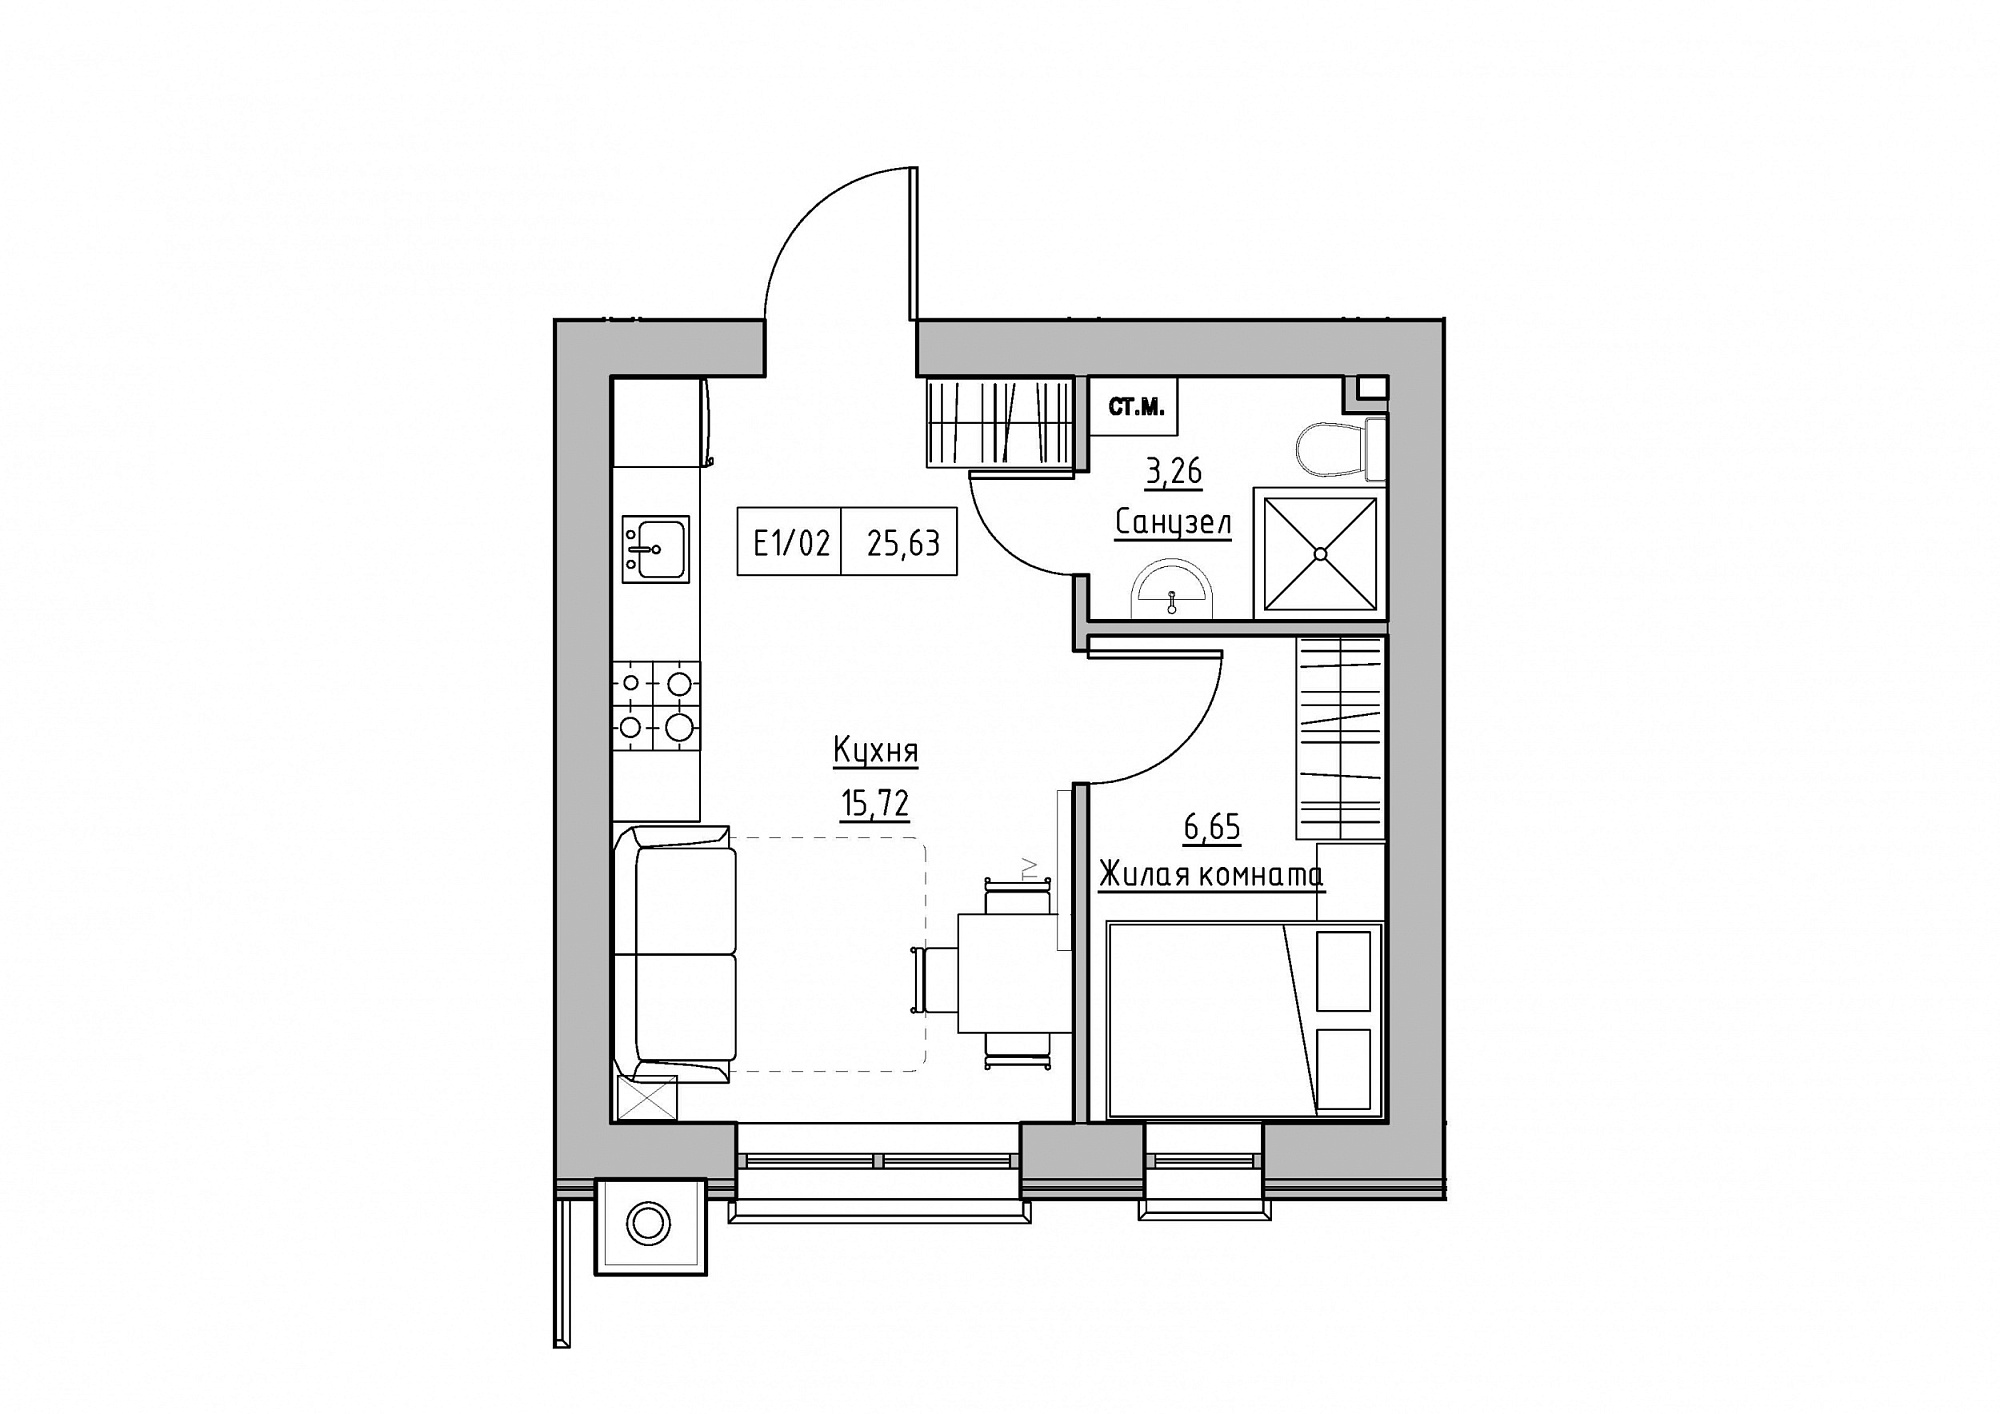 Планування 1-к квартира площею 25.63м2, KS-012-03/0004.